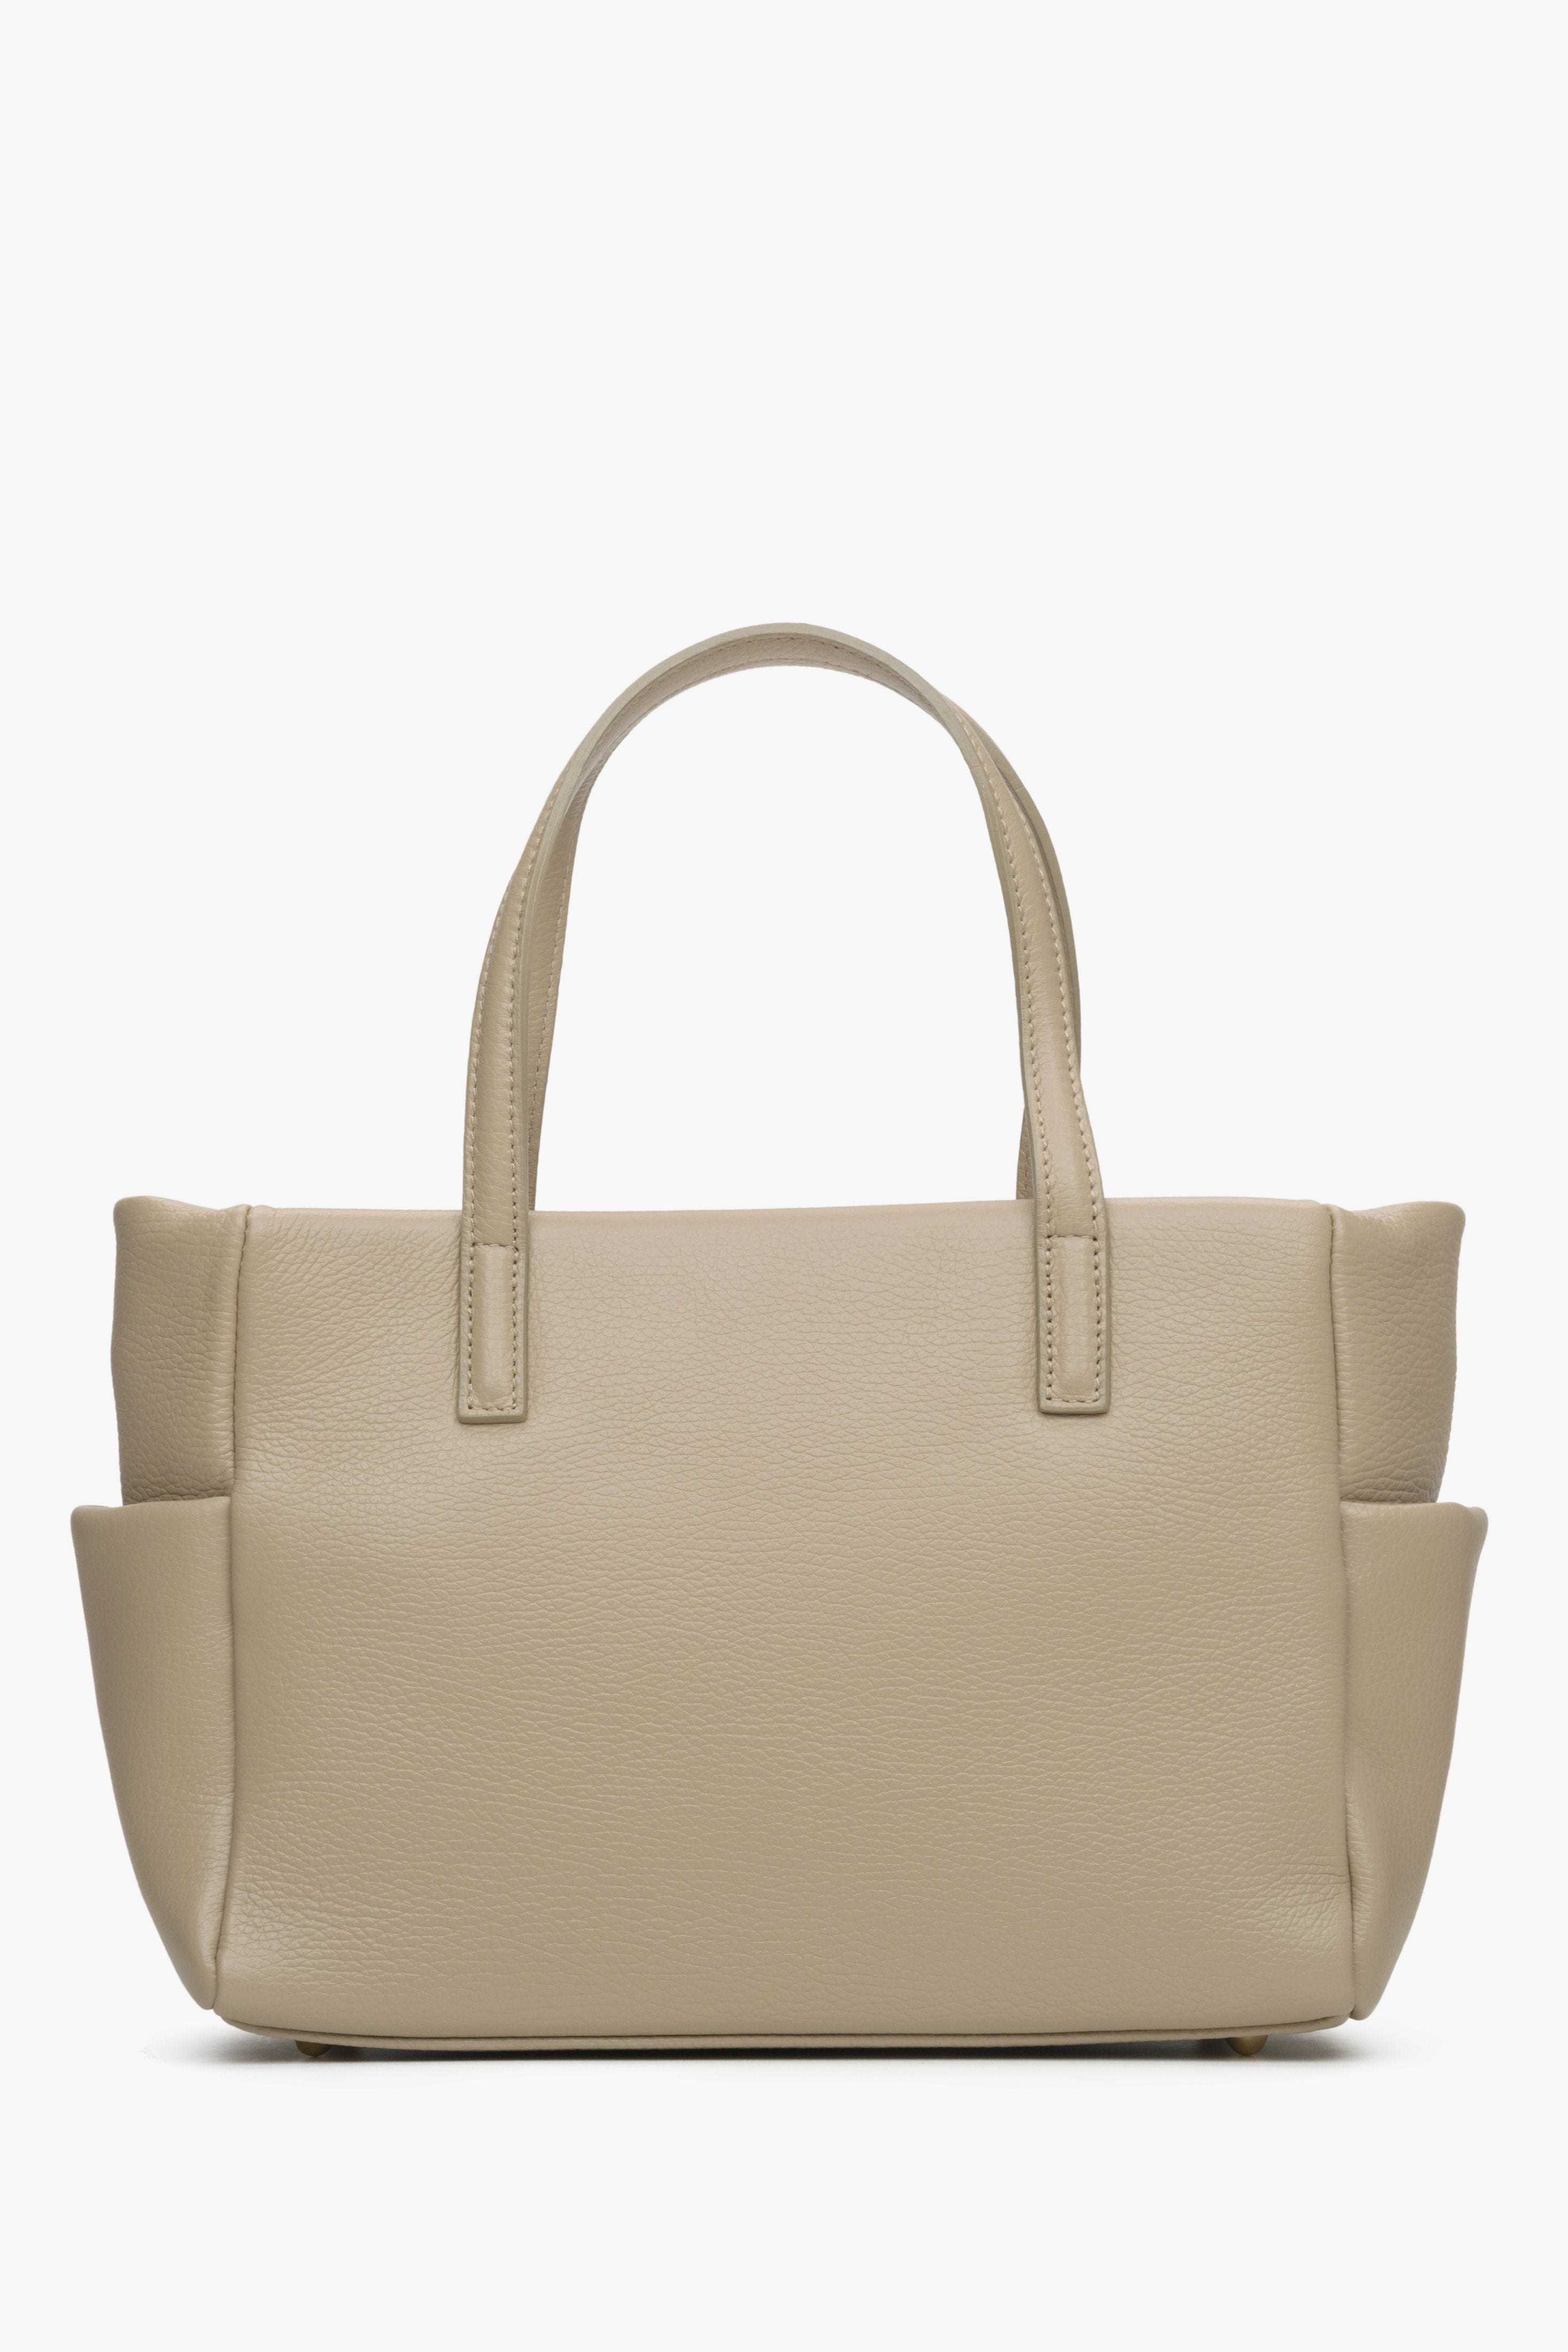 Women's beige shopper bag by Estro.